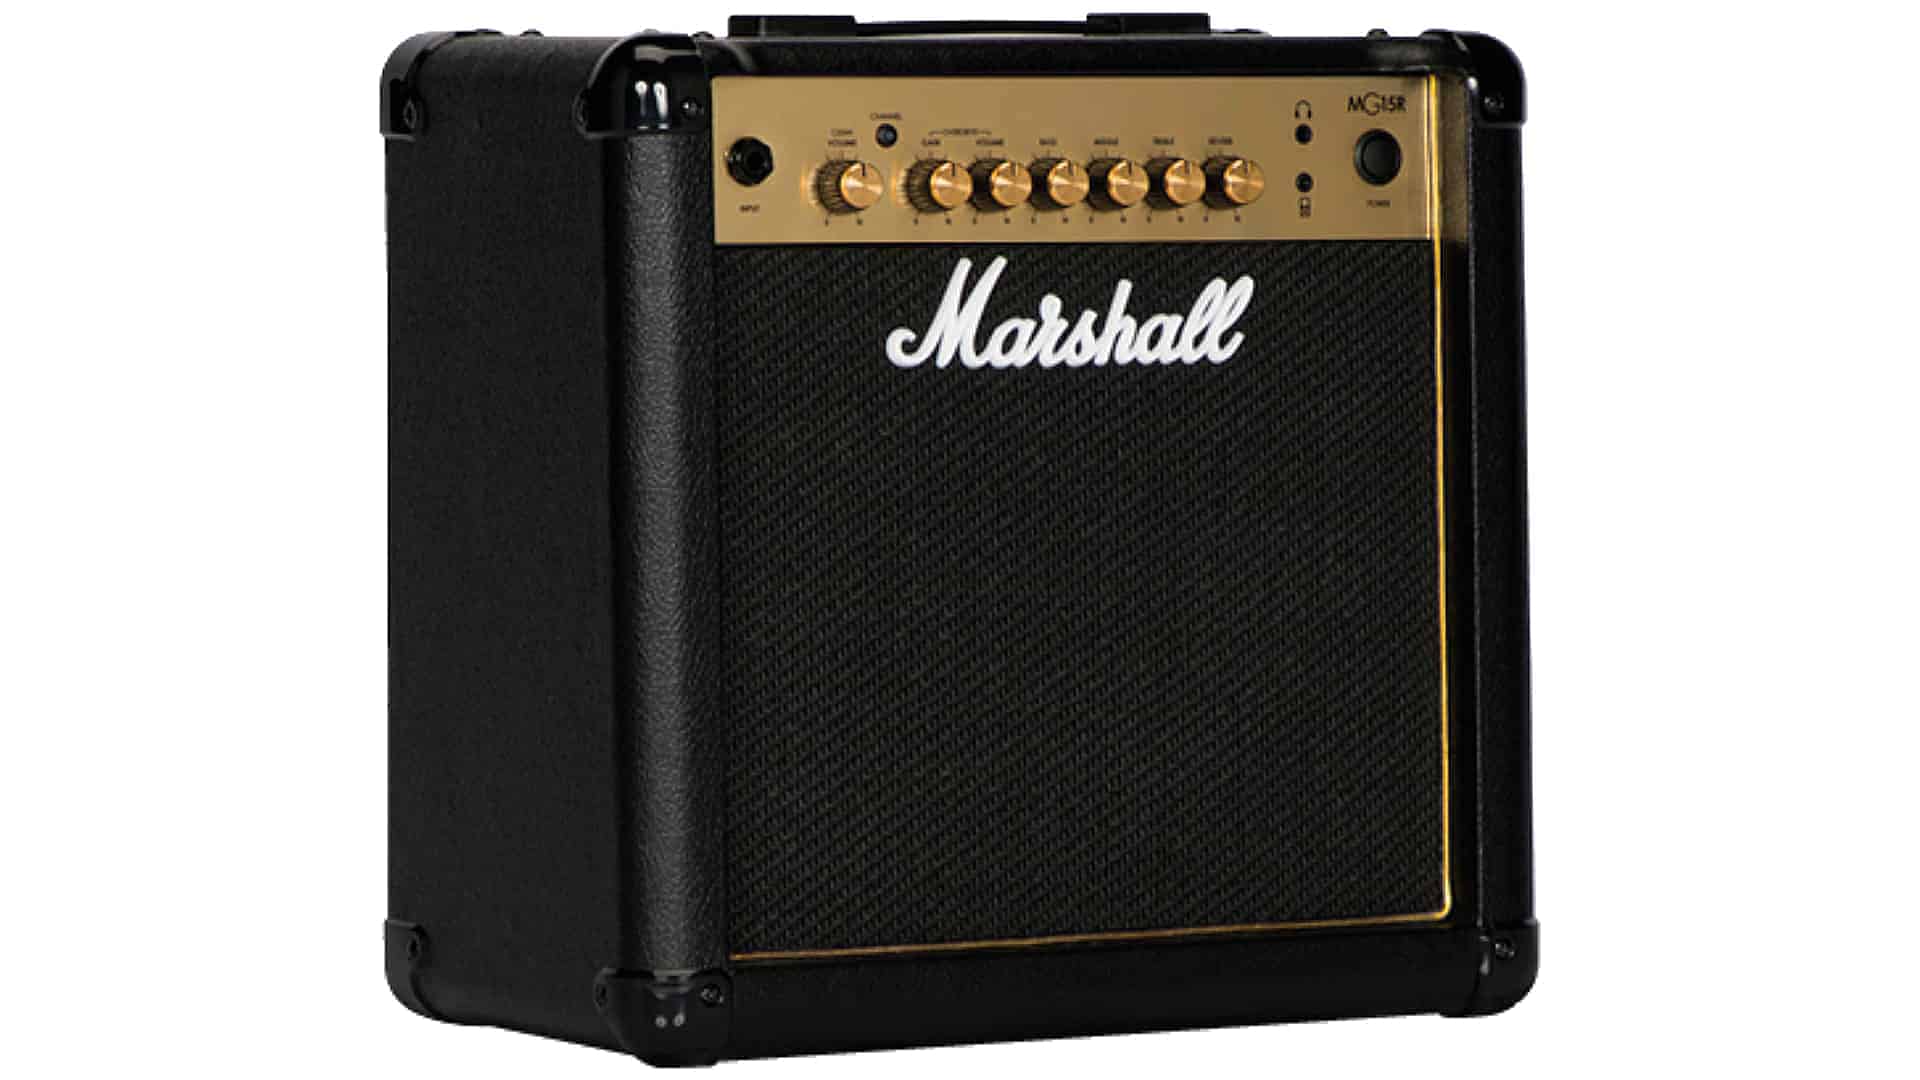 Gitarrenverstärker - Marshall MG15GR